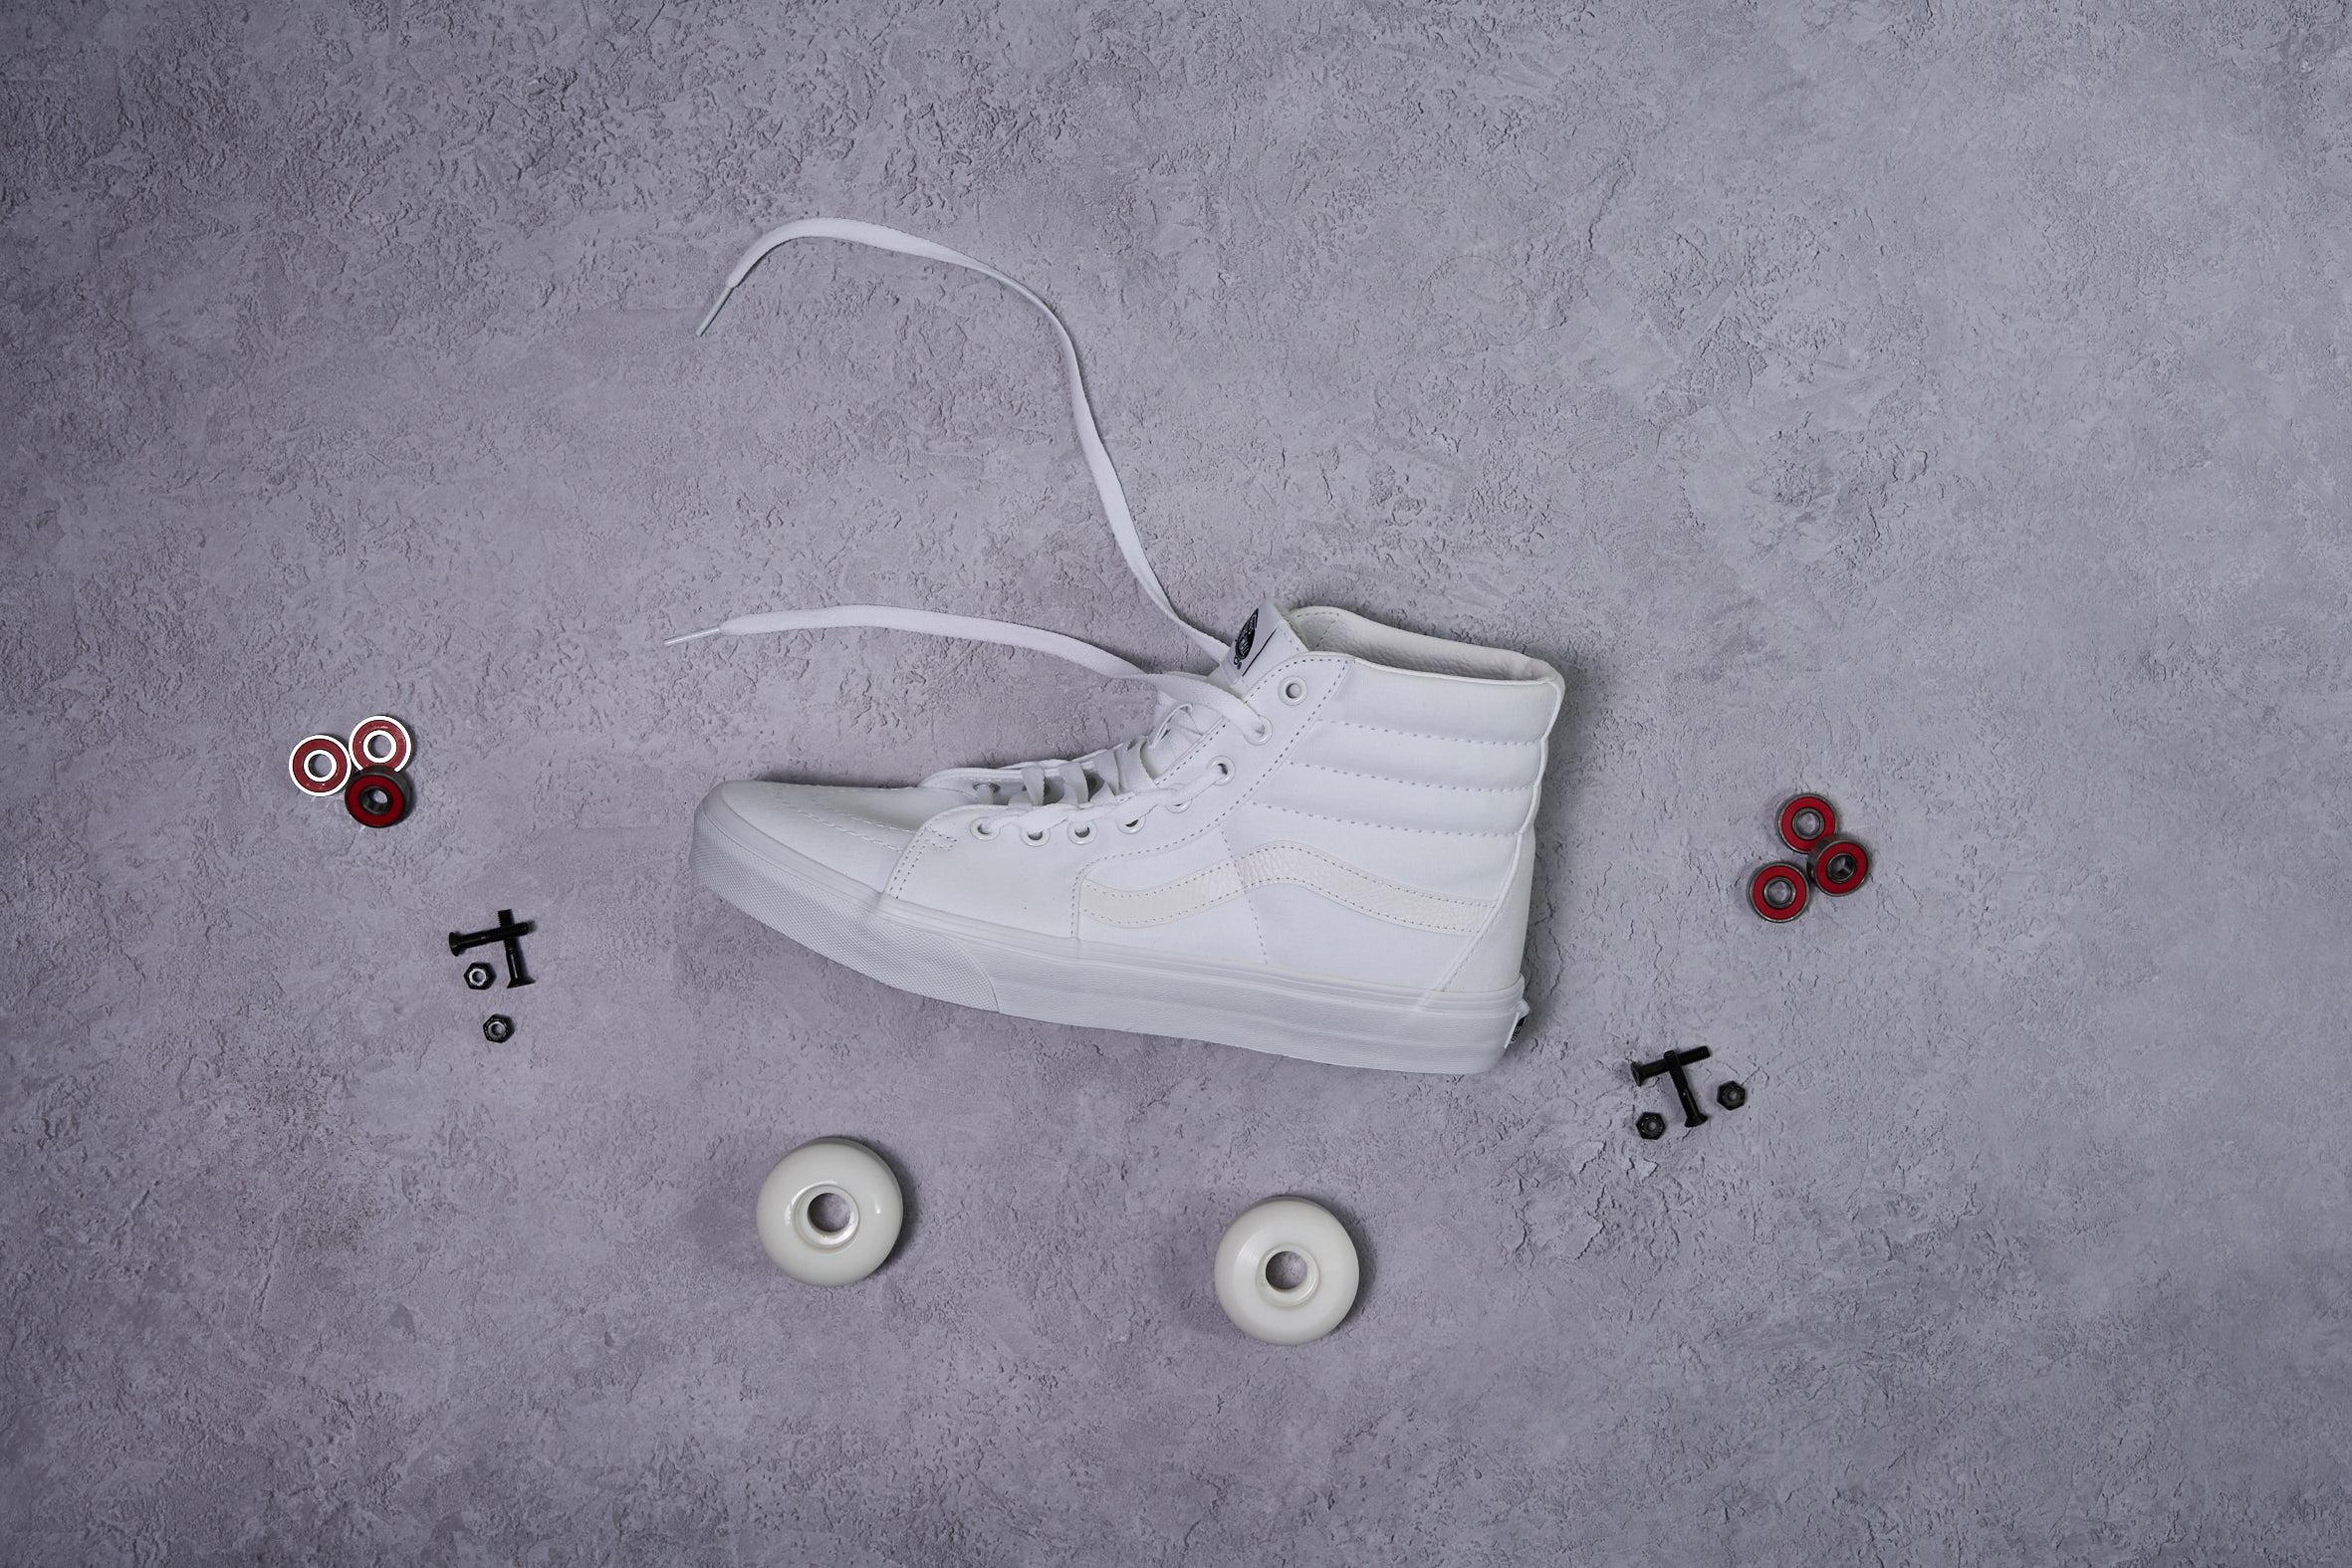 Custom VANs Sk8-HI White Classic Skate Sneakers High Top Original